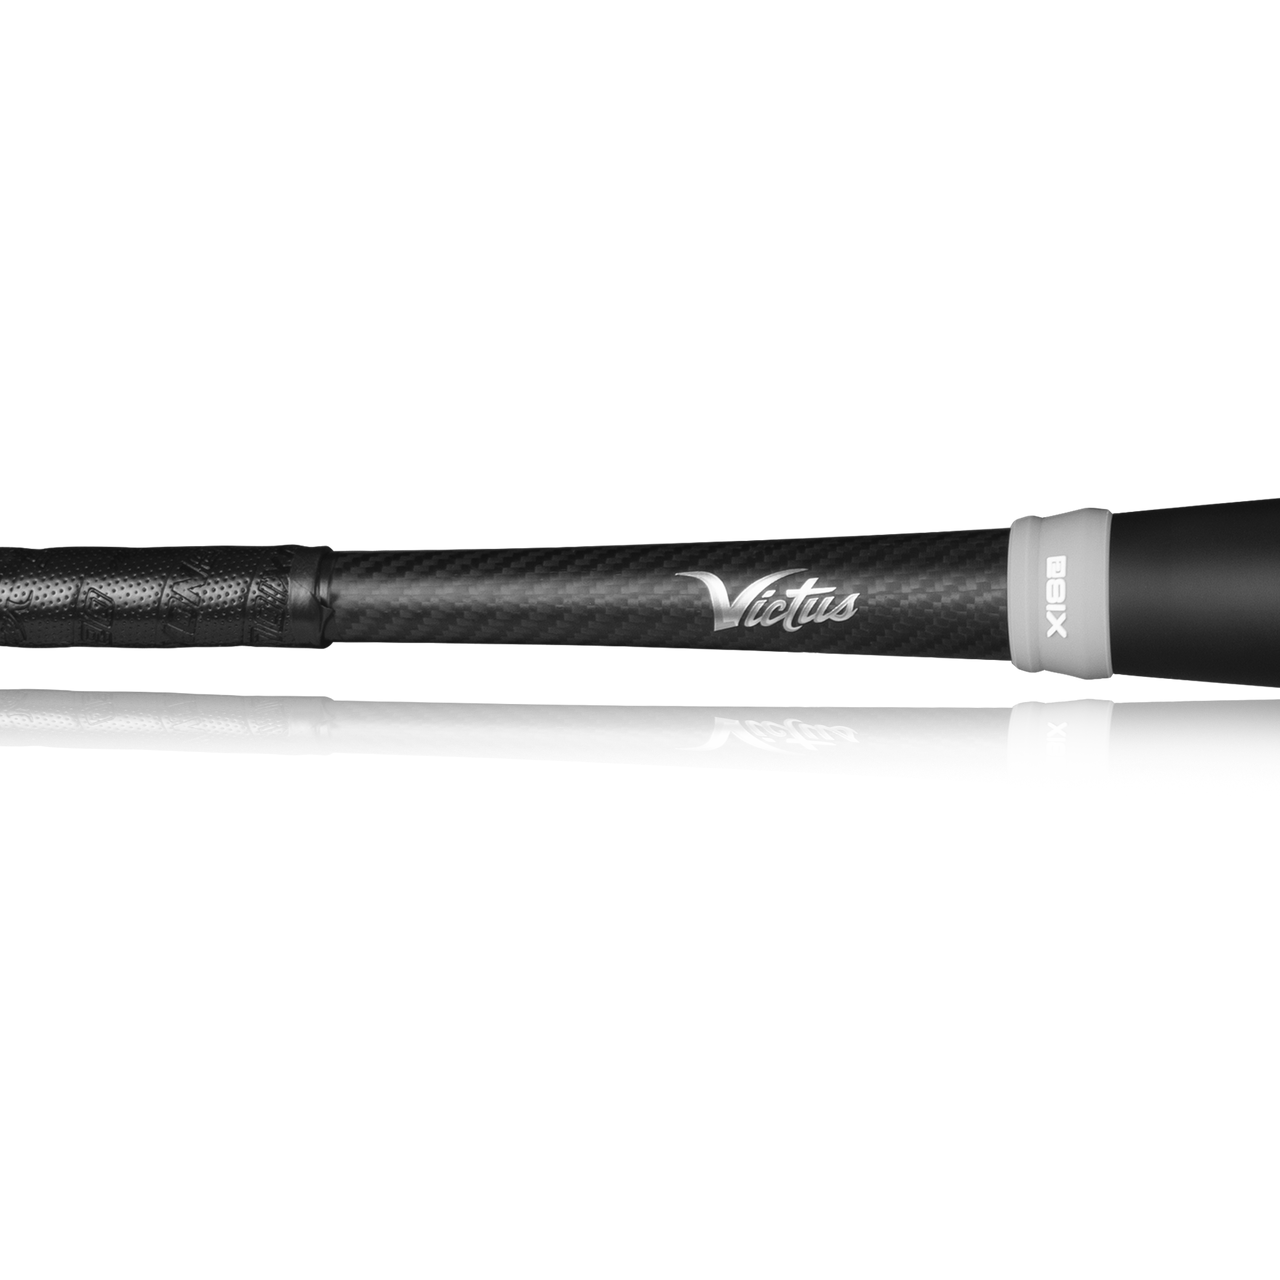 Victus - NOX 2 BBCOR Baseball Bat